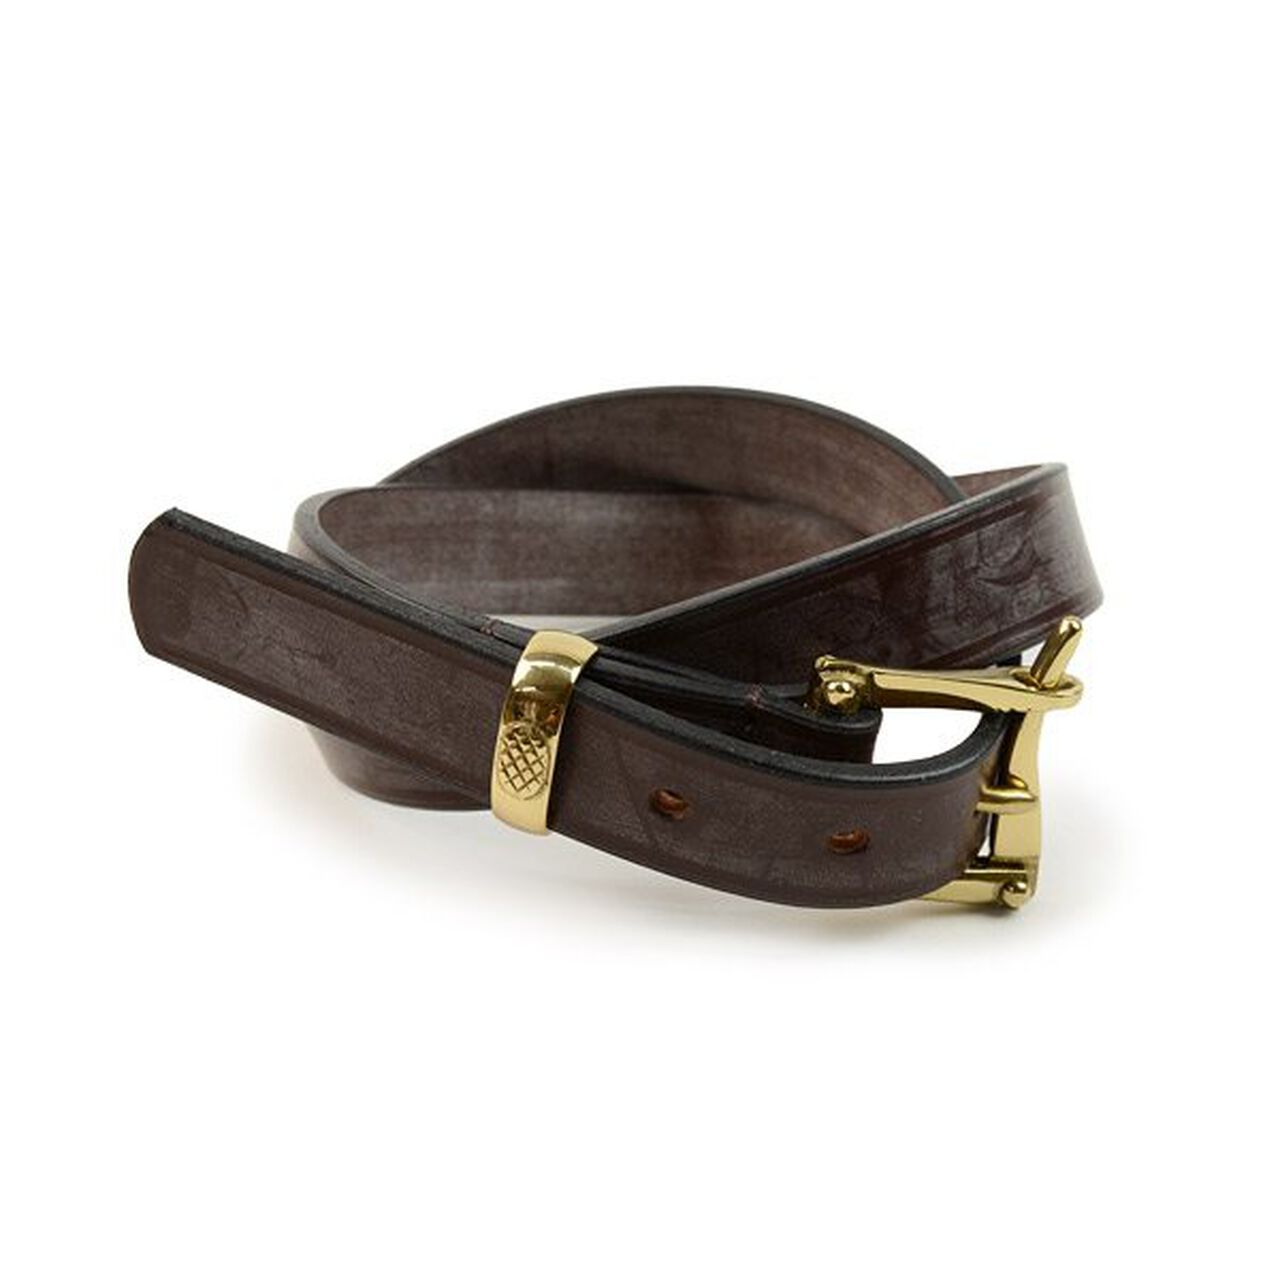 1.25 inch (30mm) quick release leather belt,DarkBrownWithBrassBuckle, large image number 0